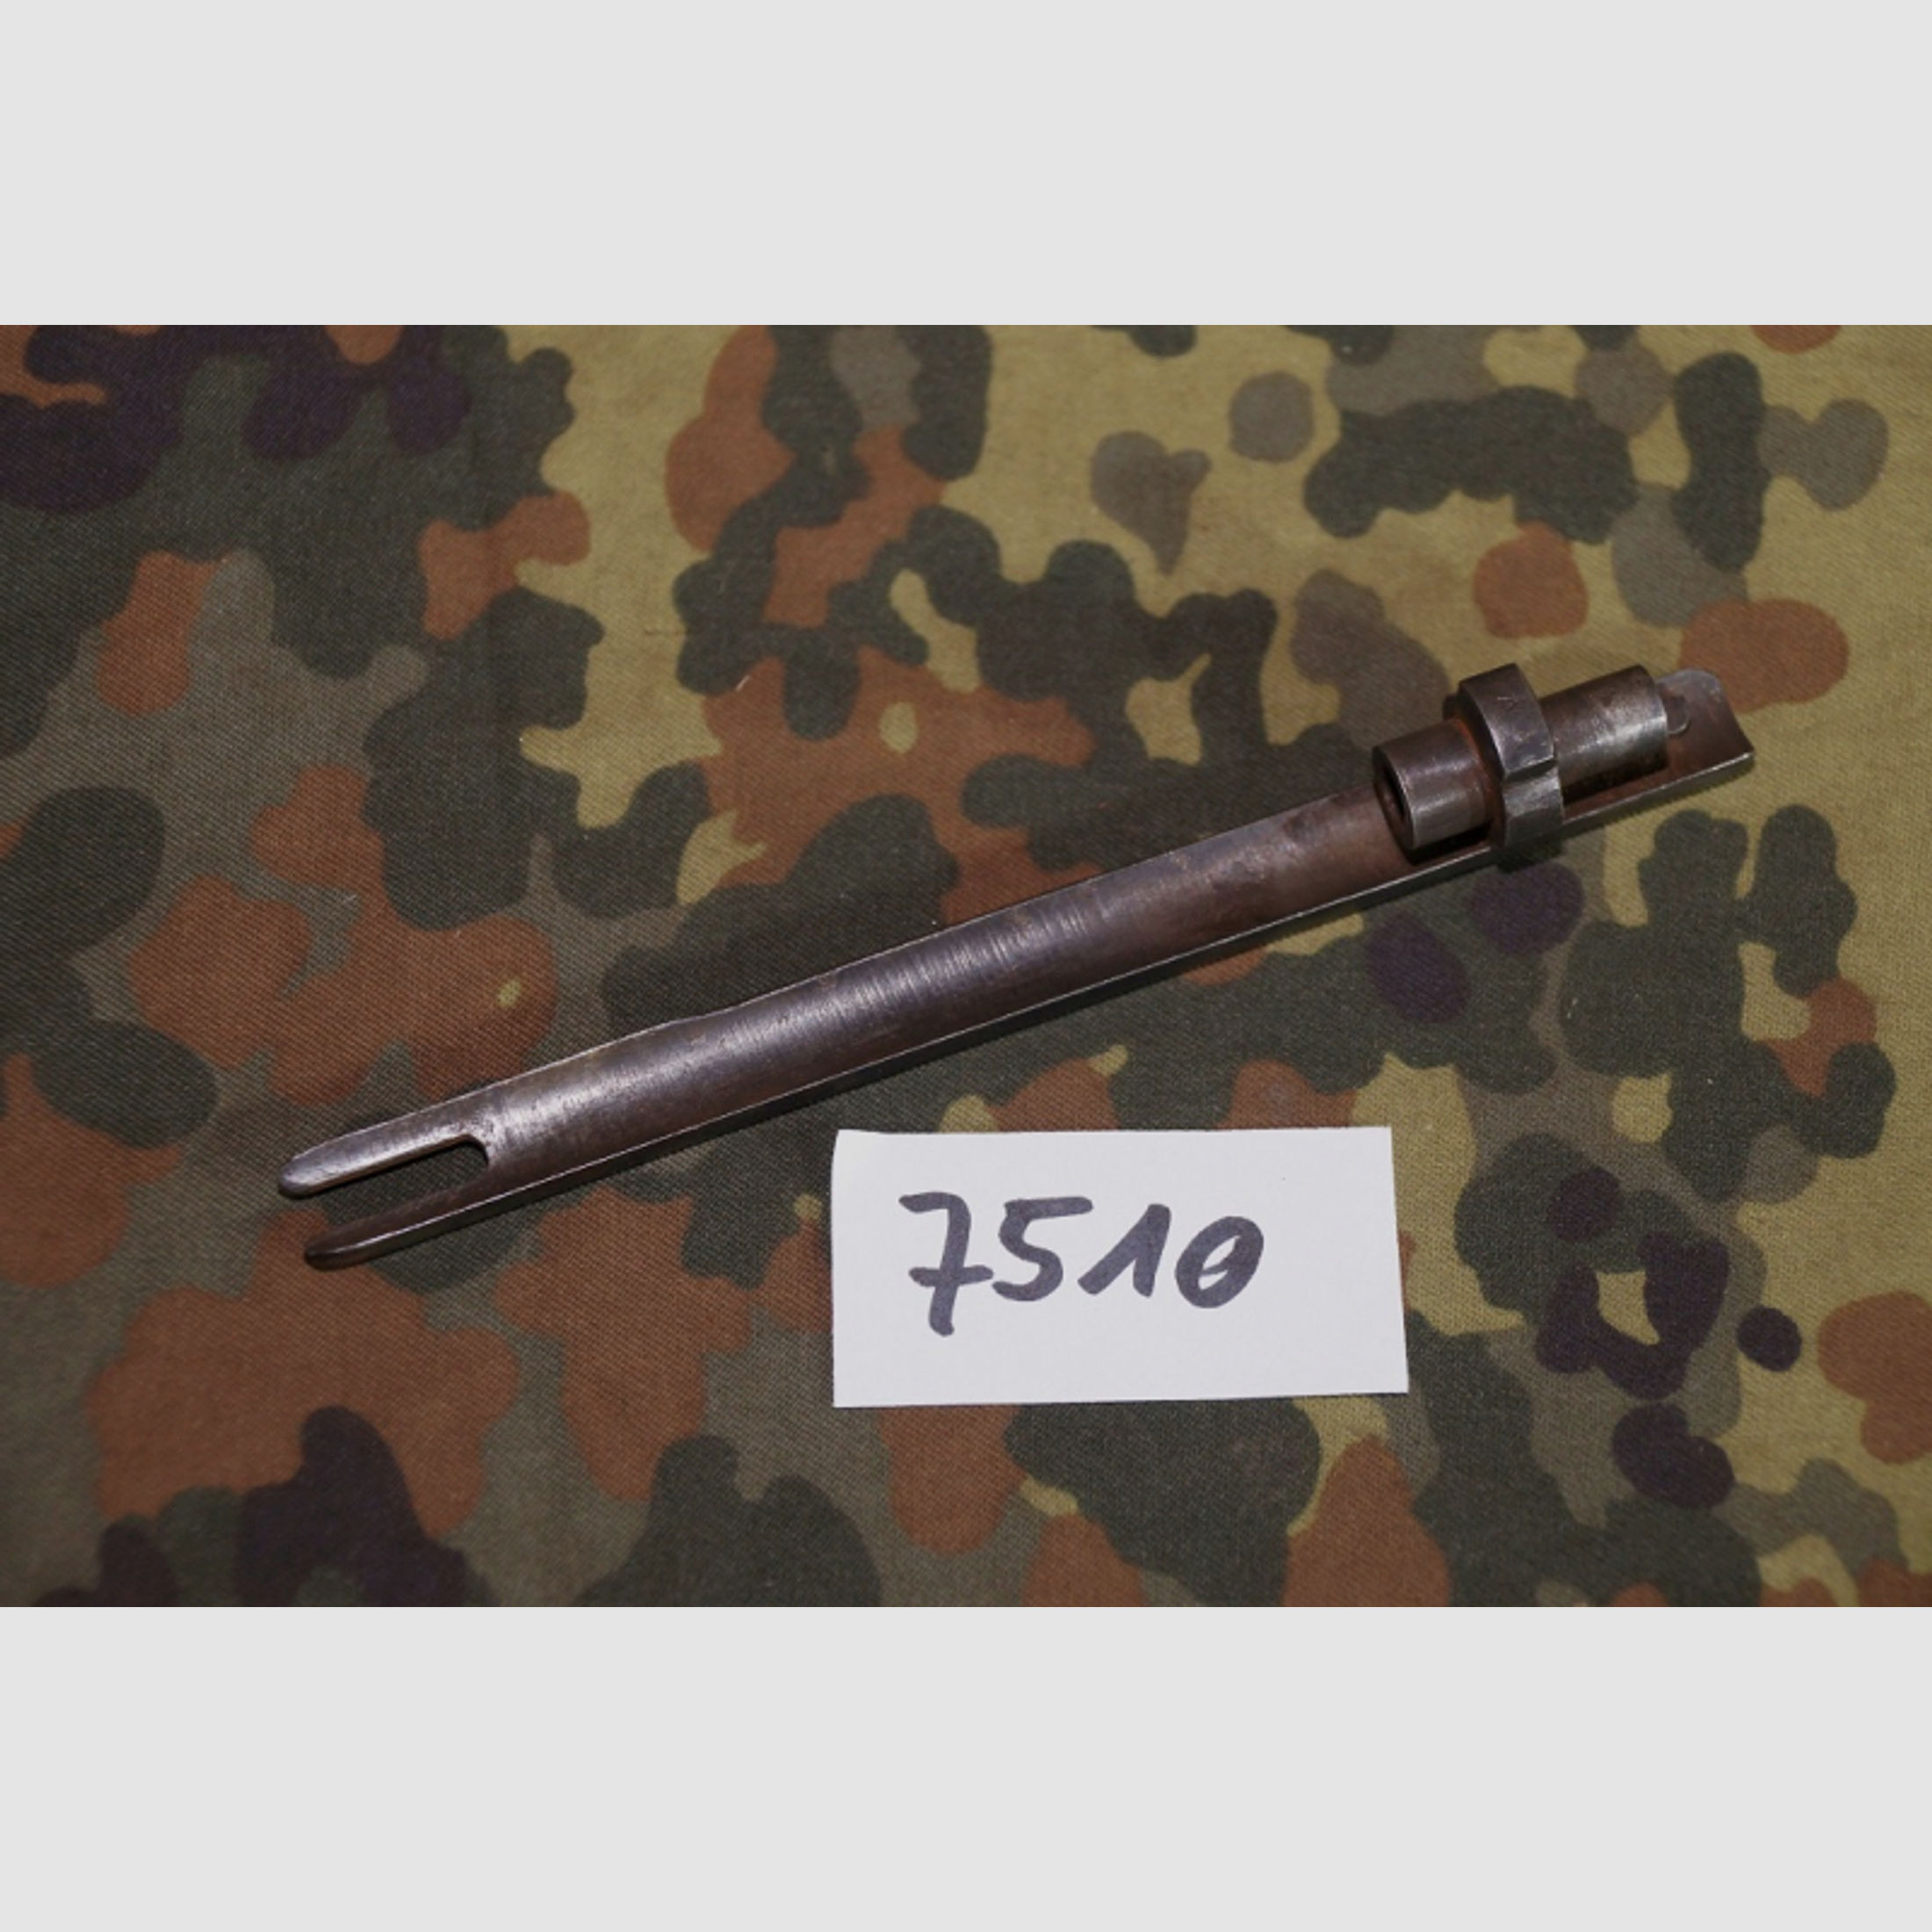 Mosin Nagant Verschlussführung M1891 Gewehr Karabiner Nagant russisch DDR NVA Sammlung (7510)